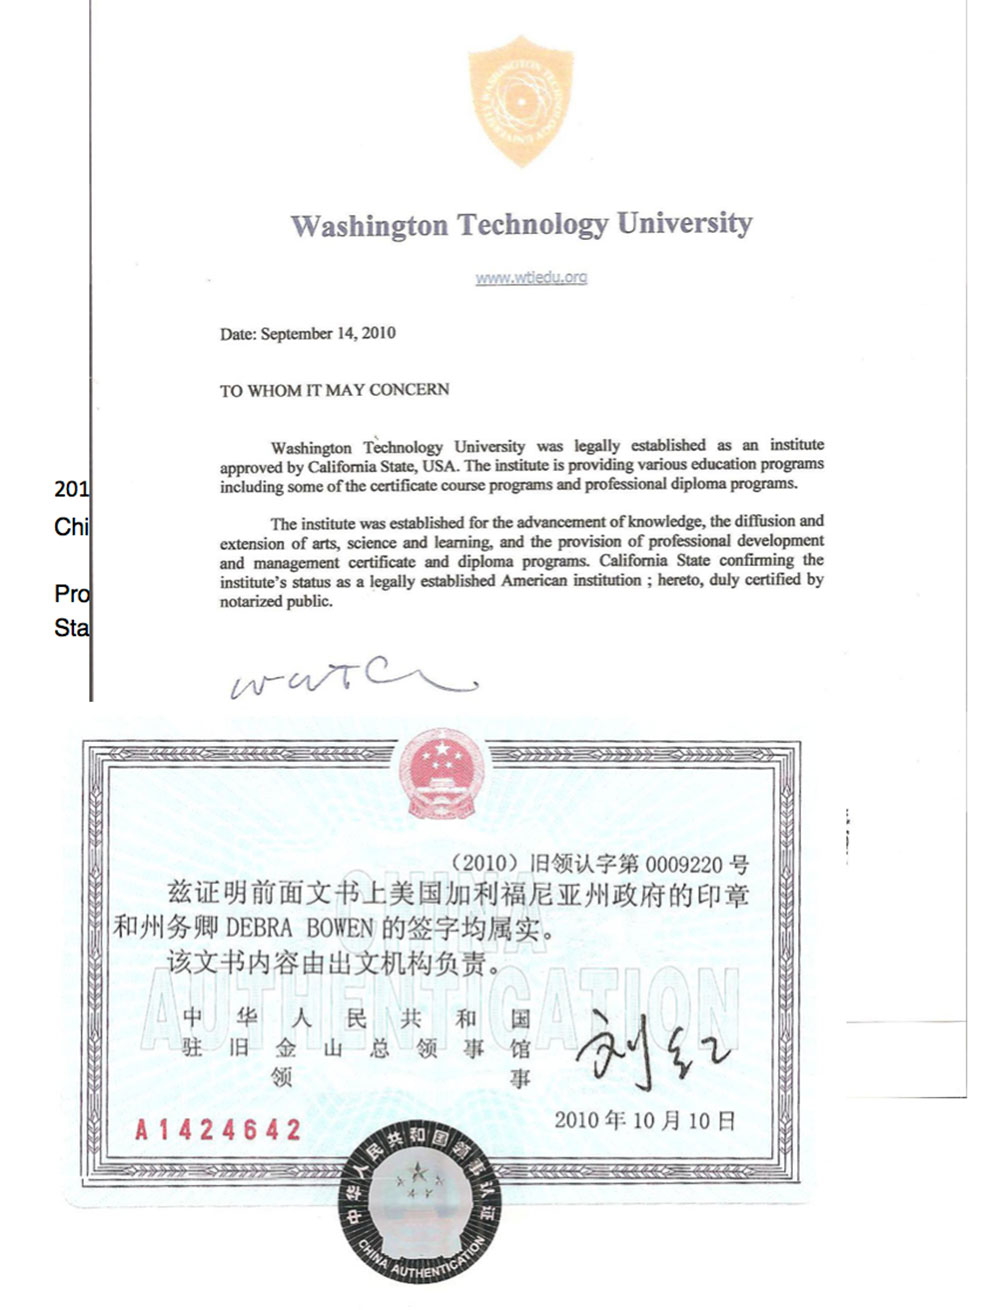 Washington Technology University